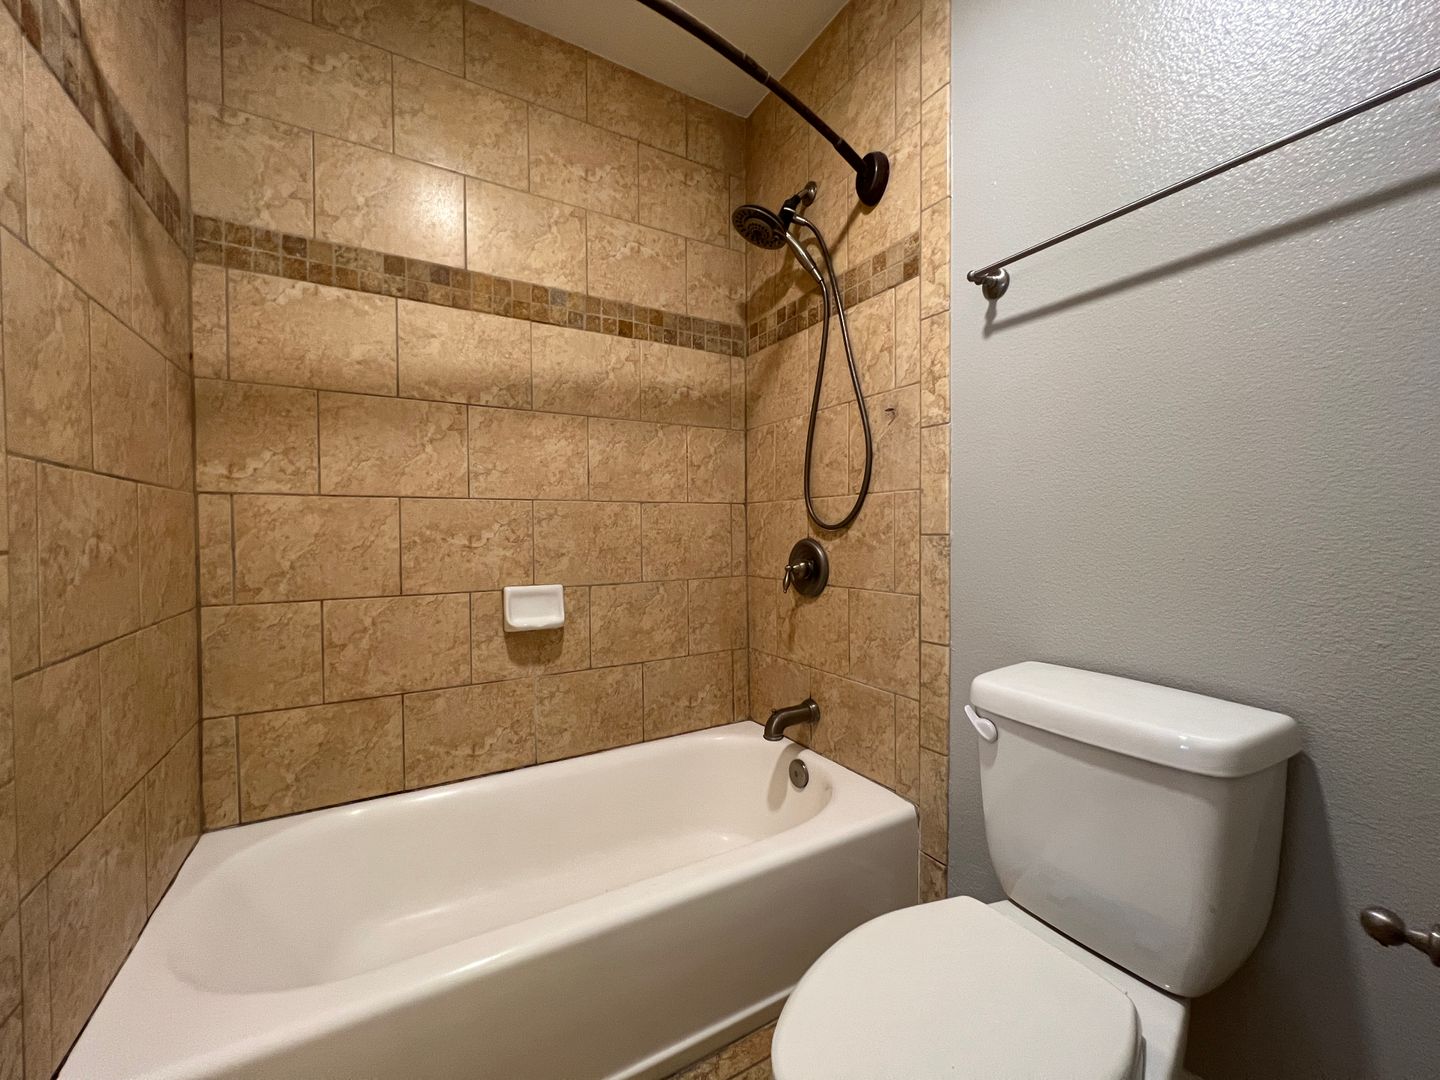 2 bedroom 1.5 bath condo in South San Jose